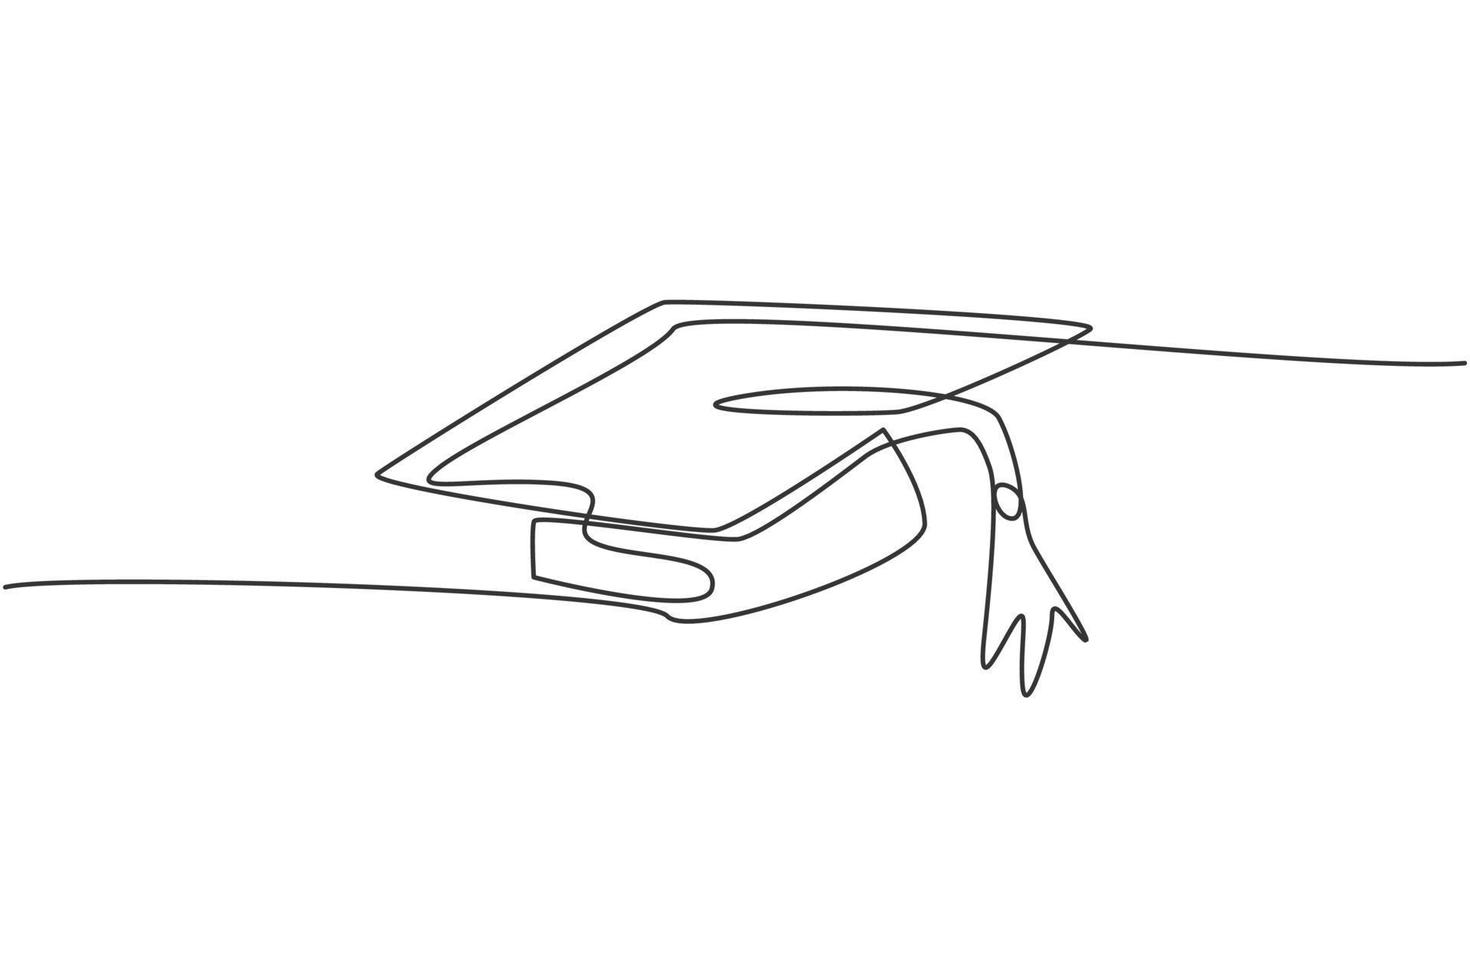 dibujo de línea continua única del conjunto de uniformes de graduación de toga. sombrero de graduación para soltero. regreso a la escuela estilo minimalista. concepto de educación. Ilustración de vector de diseño gráfico de dibujo de una línea moderna